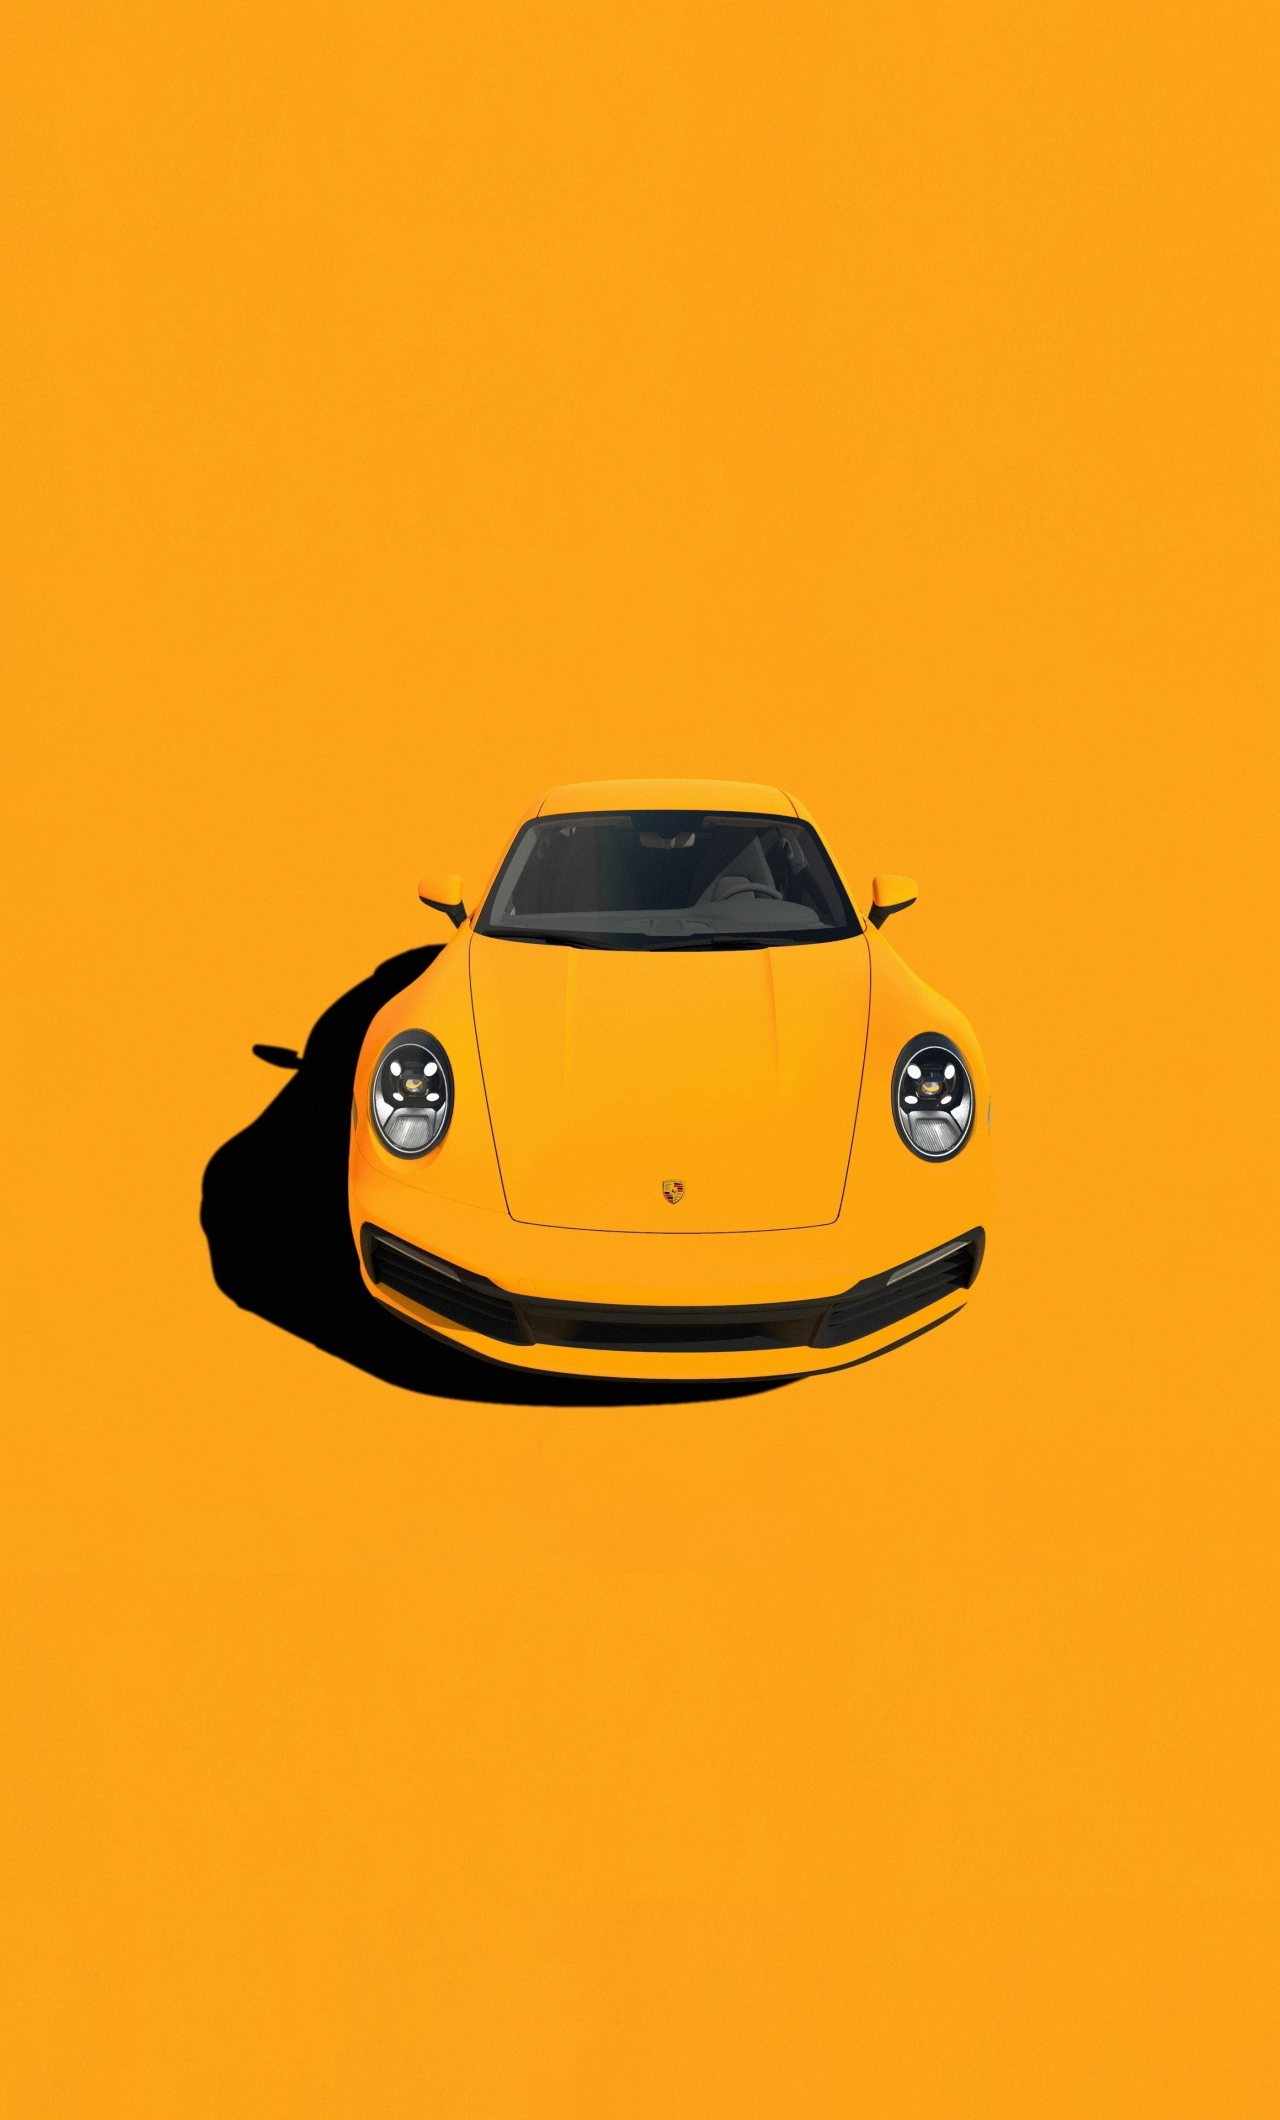 Nếu bạn yêu thích Porsche, hãy đến với hình ảnh Porsche Art để khám phá những tác phẩm nghệ thuật độc đáo lấy cảm hứng từ chiếc xe huyền thoại này. Sự sáng tạo của các nghệ sĩ đã tạo nên những tác phẩm tuyệt vời và đầy cảm hứng.